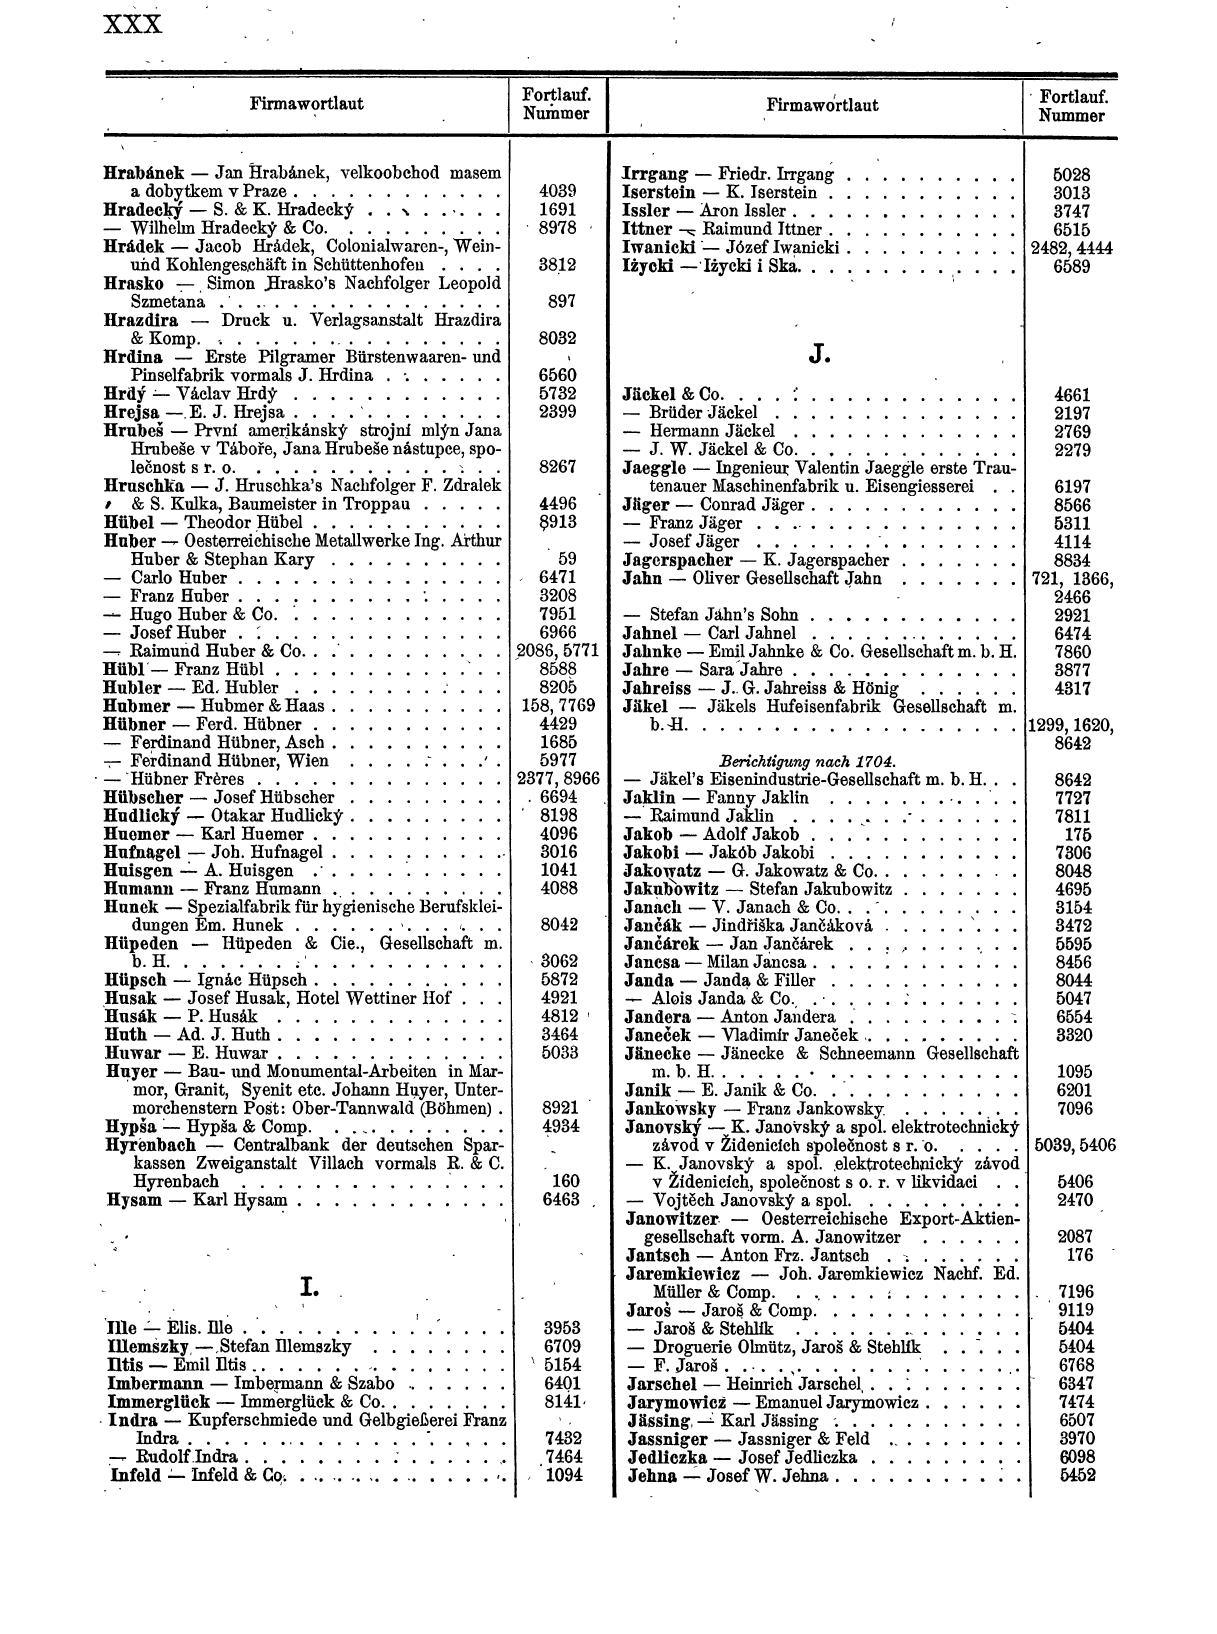 Zentralblatt für die Eintragungen in das Handelsregister 1913, Teil 1 - Seite 38